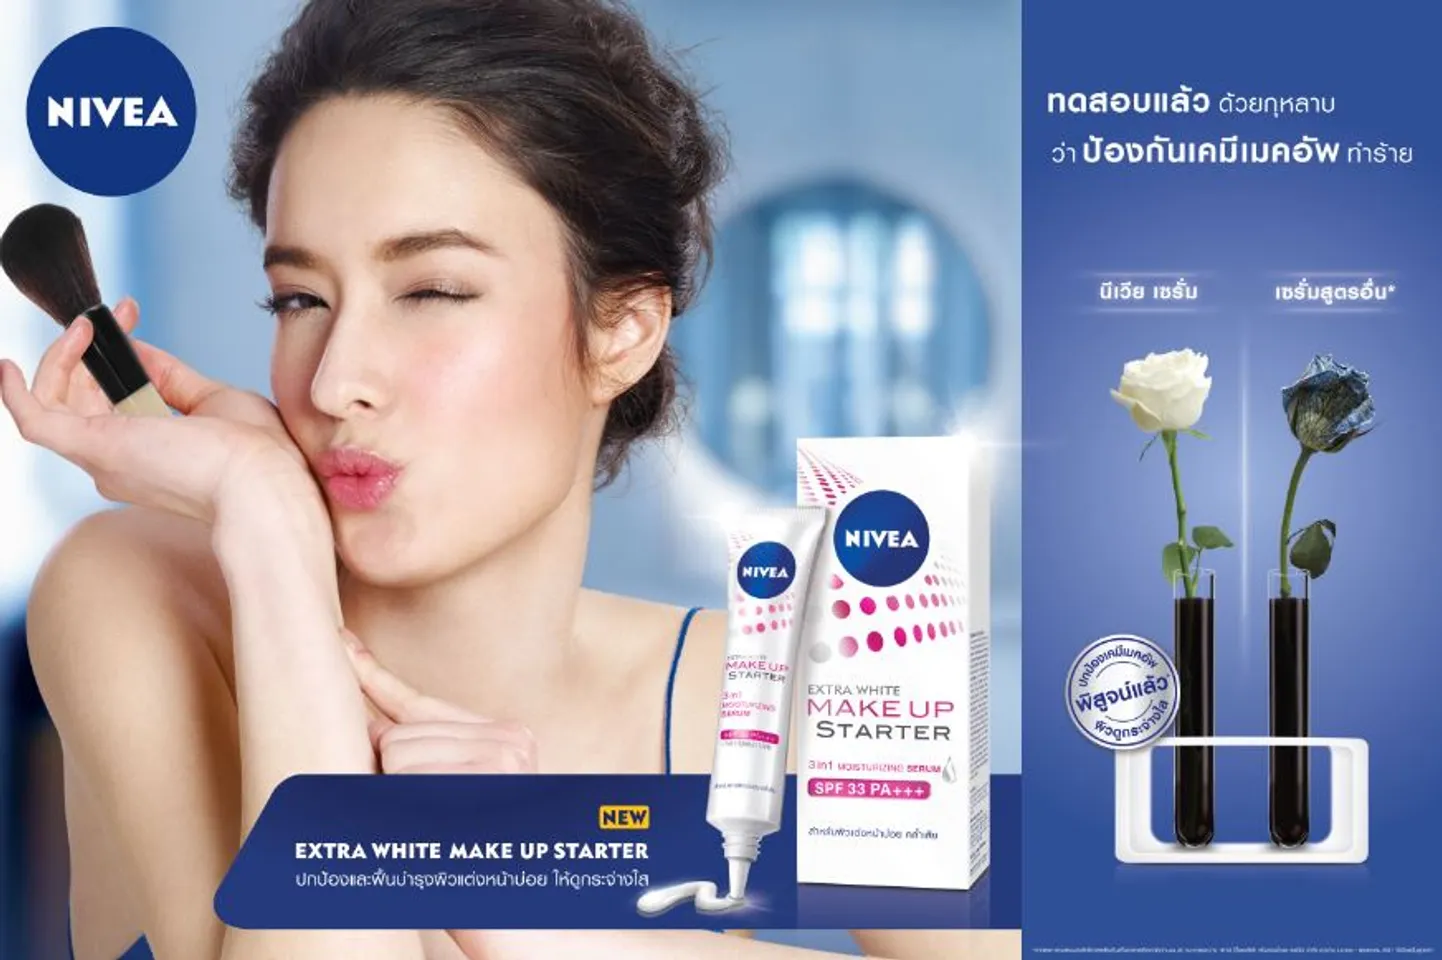  Serum Nivea được bình chọn là Sản phẩm dưỡng trắng da mặt được yêu thích nhất trong Cosmopolitan Beauty Awards 2014.